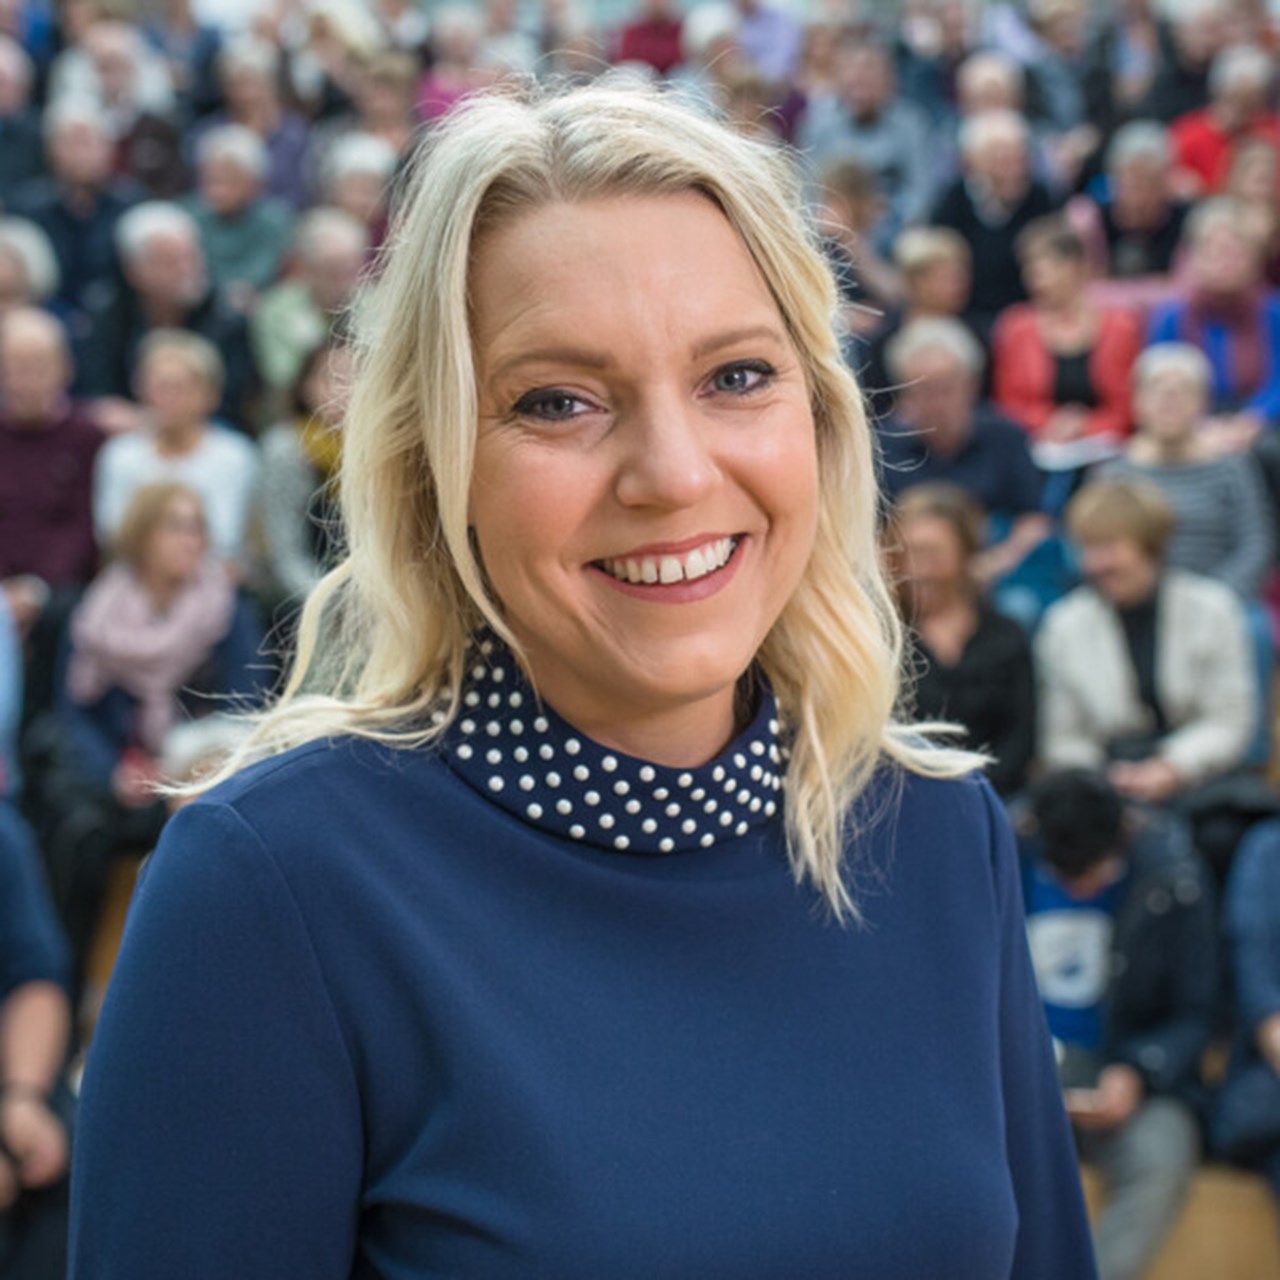 Porträtt på Carina Bergfeldt, reporter vid SVT under besök i Umeå i samband med att hon utsågs till hedersdoktor vid Umeå universitet 2018.